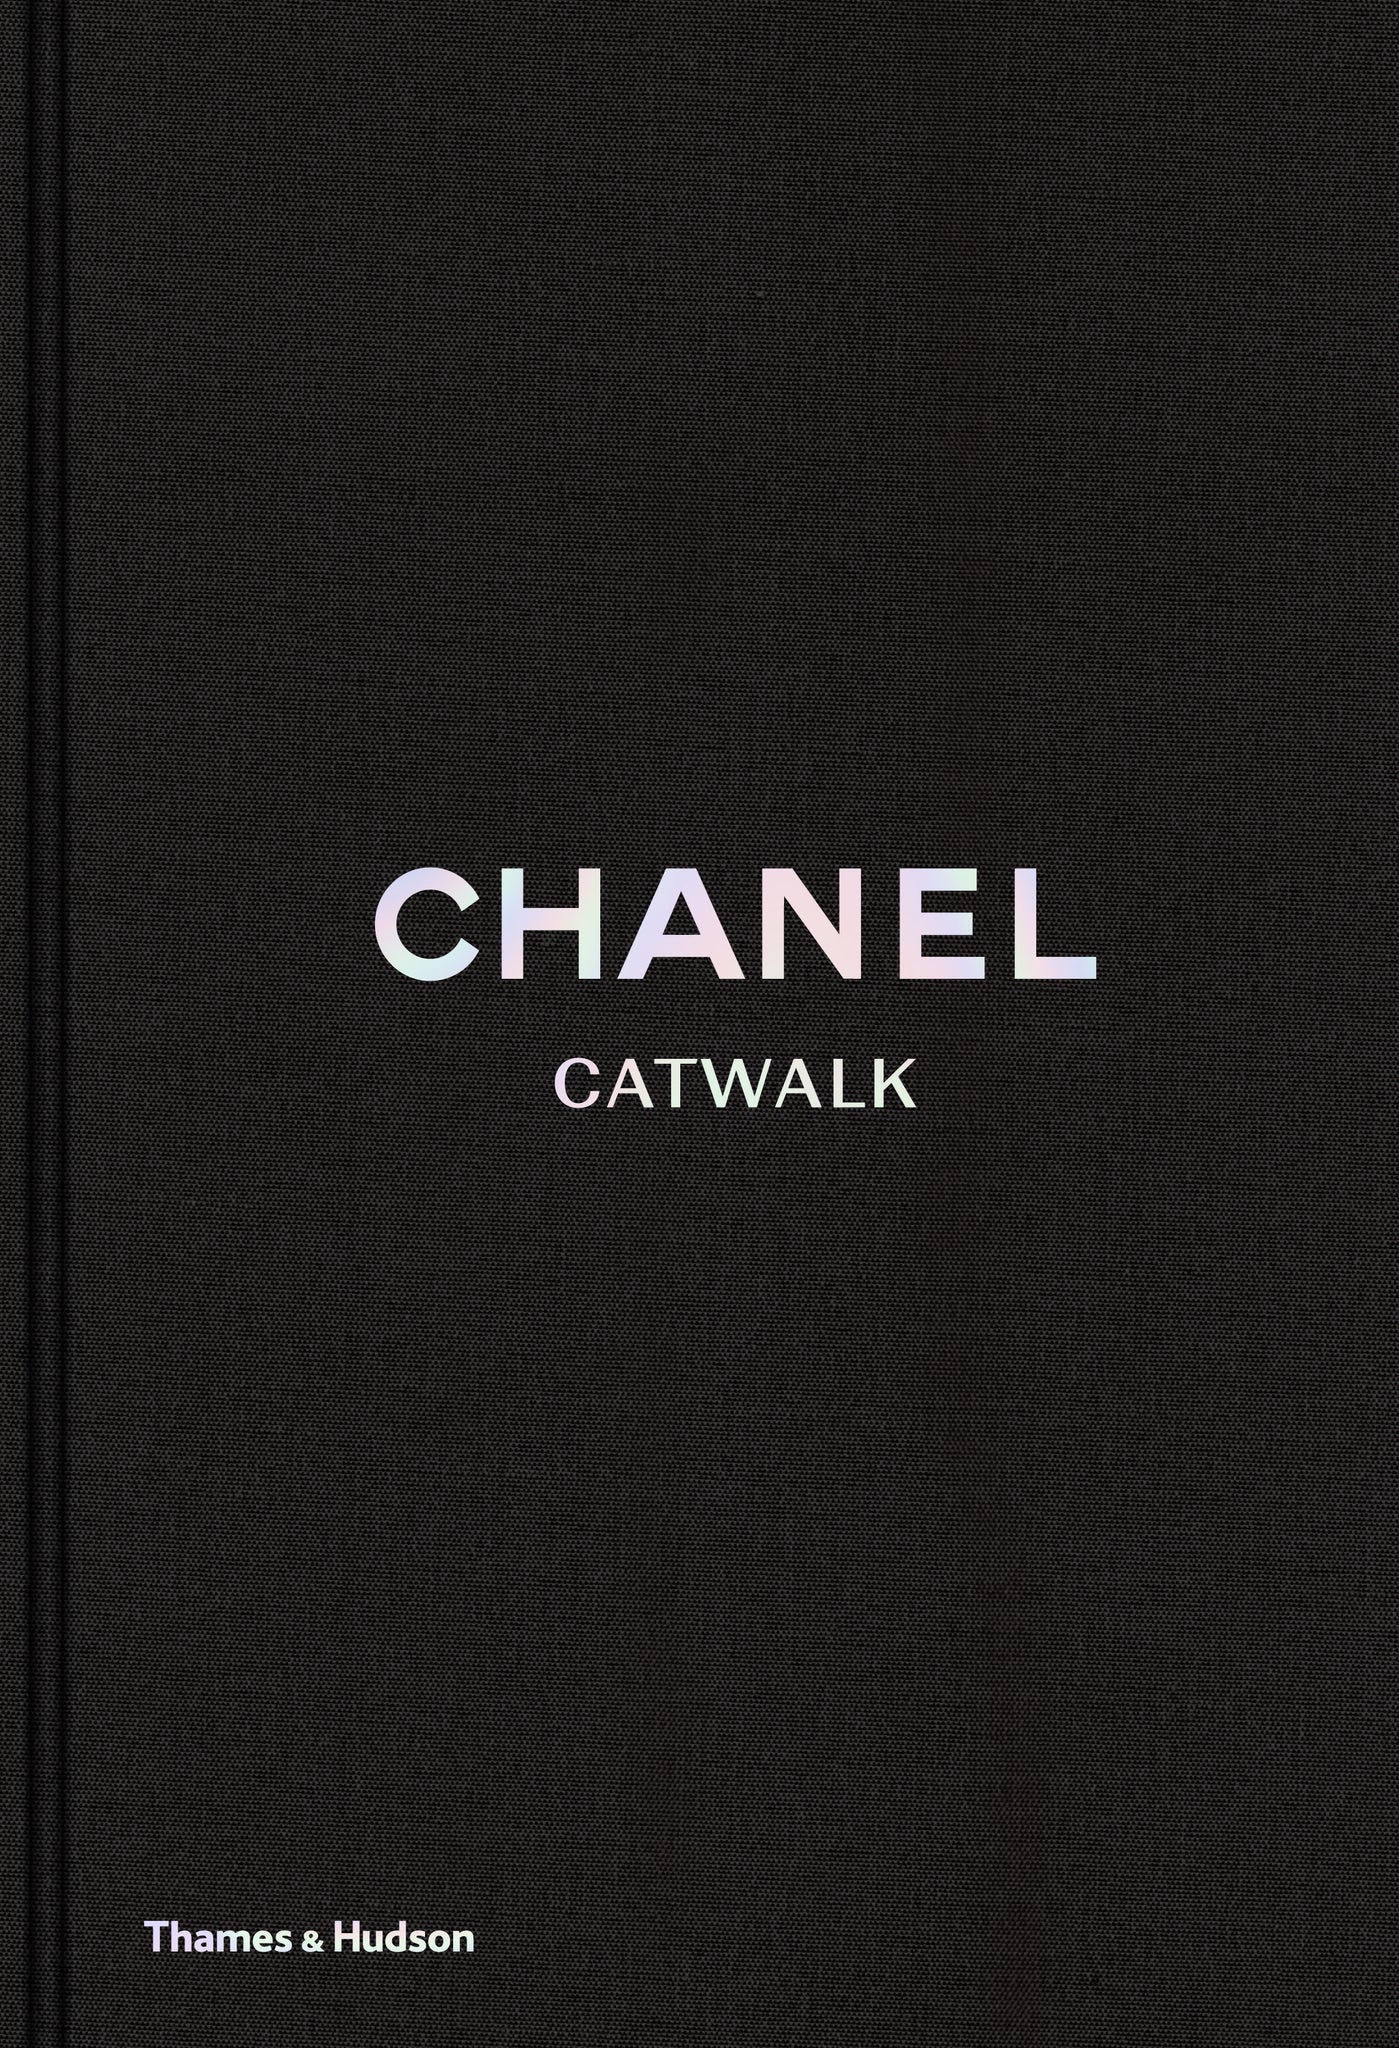 CHANEL CATWALK, libro decorativo sobre moda de Thames & Hudson